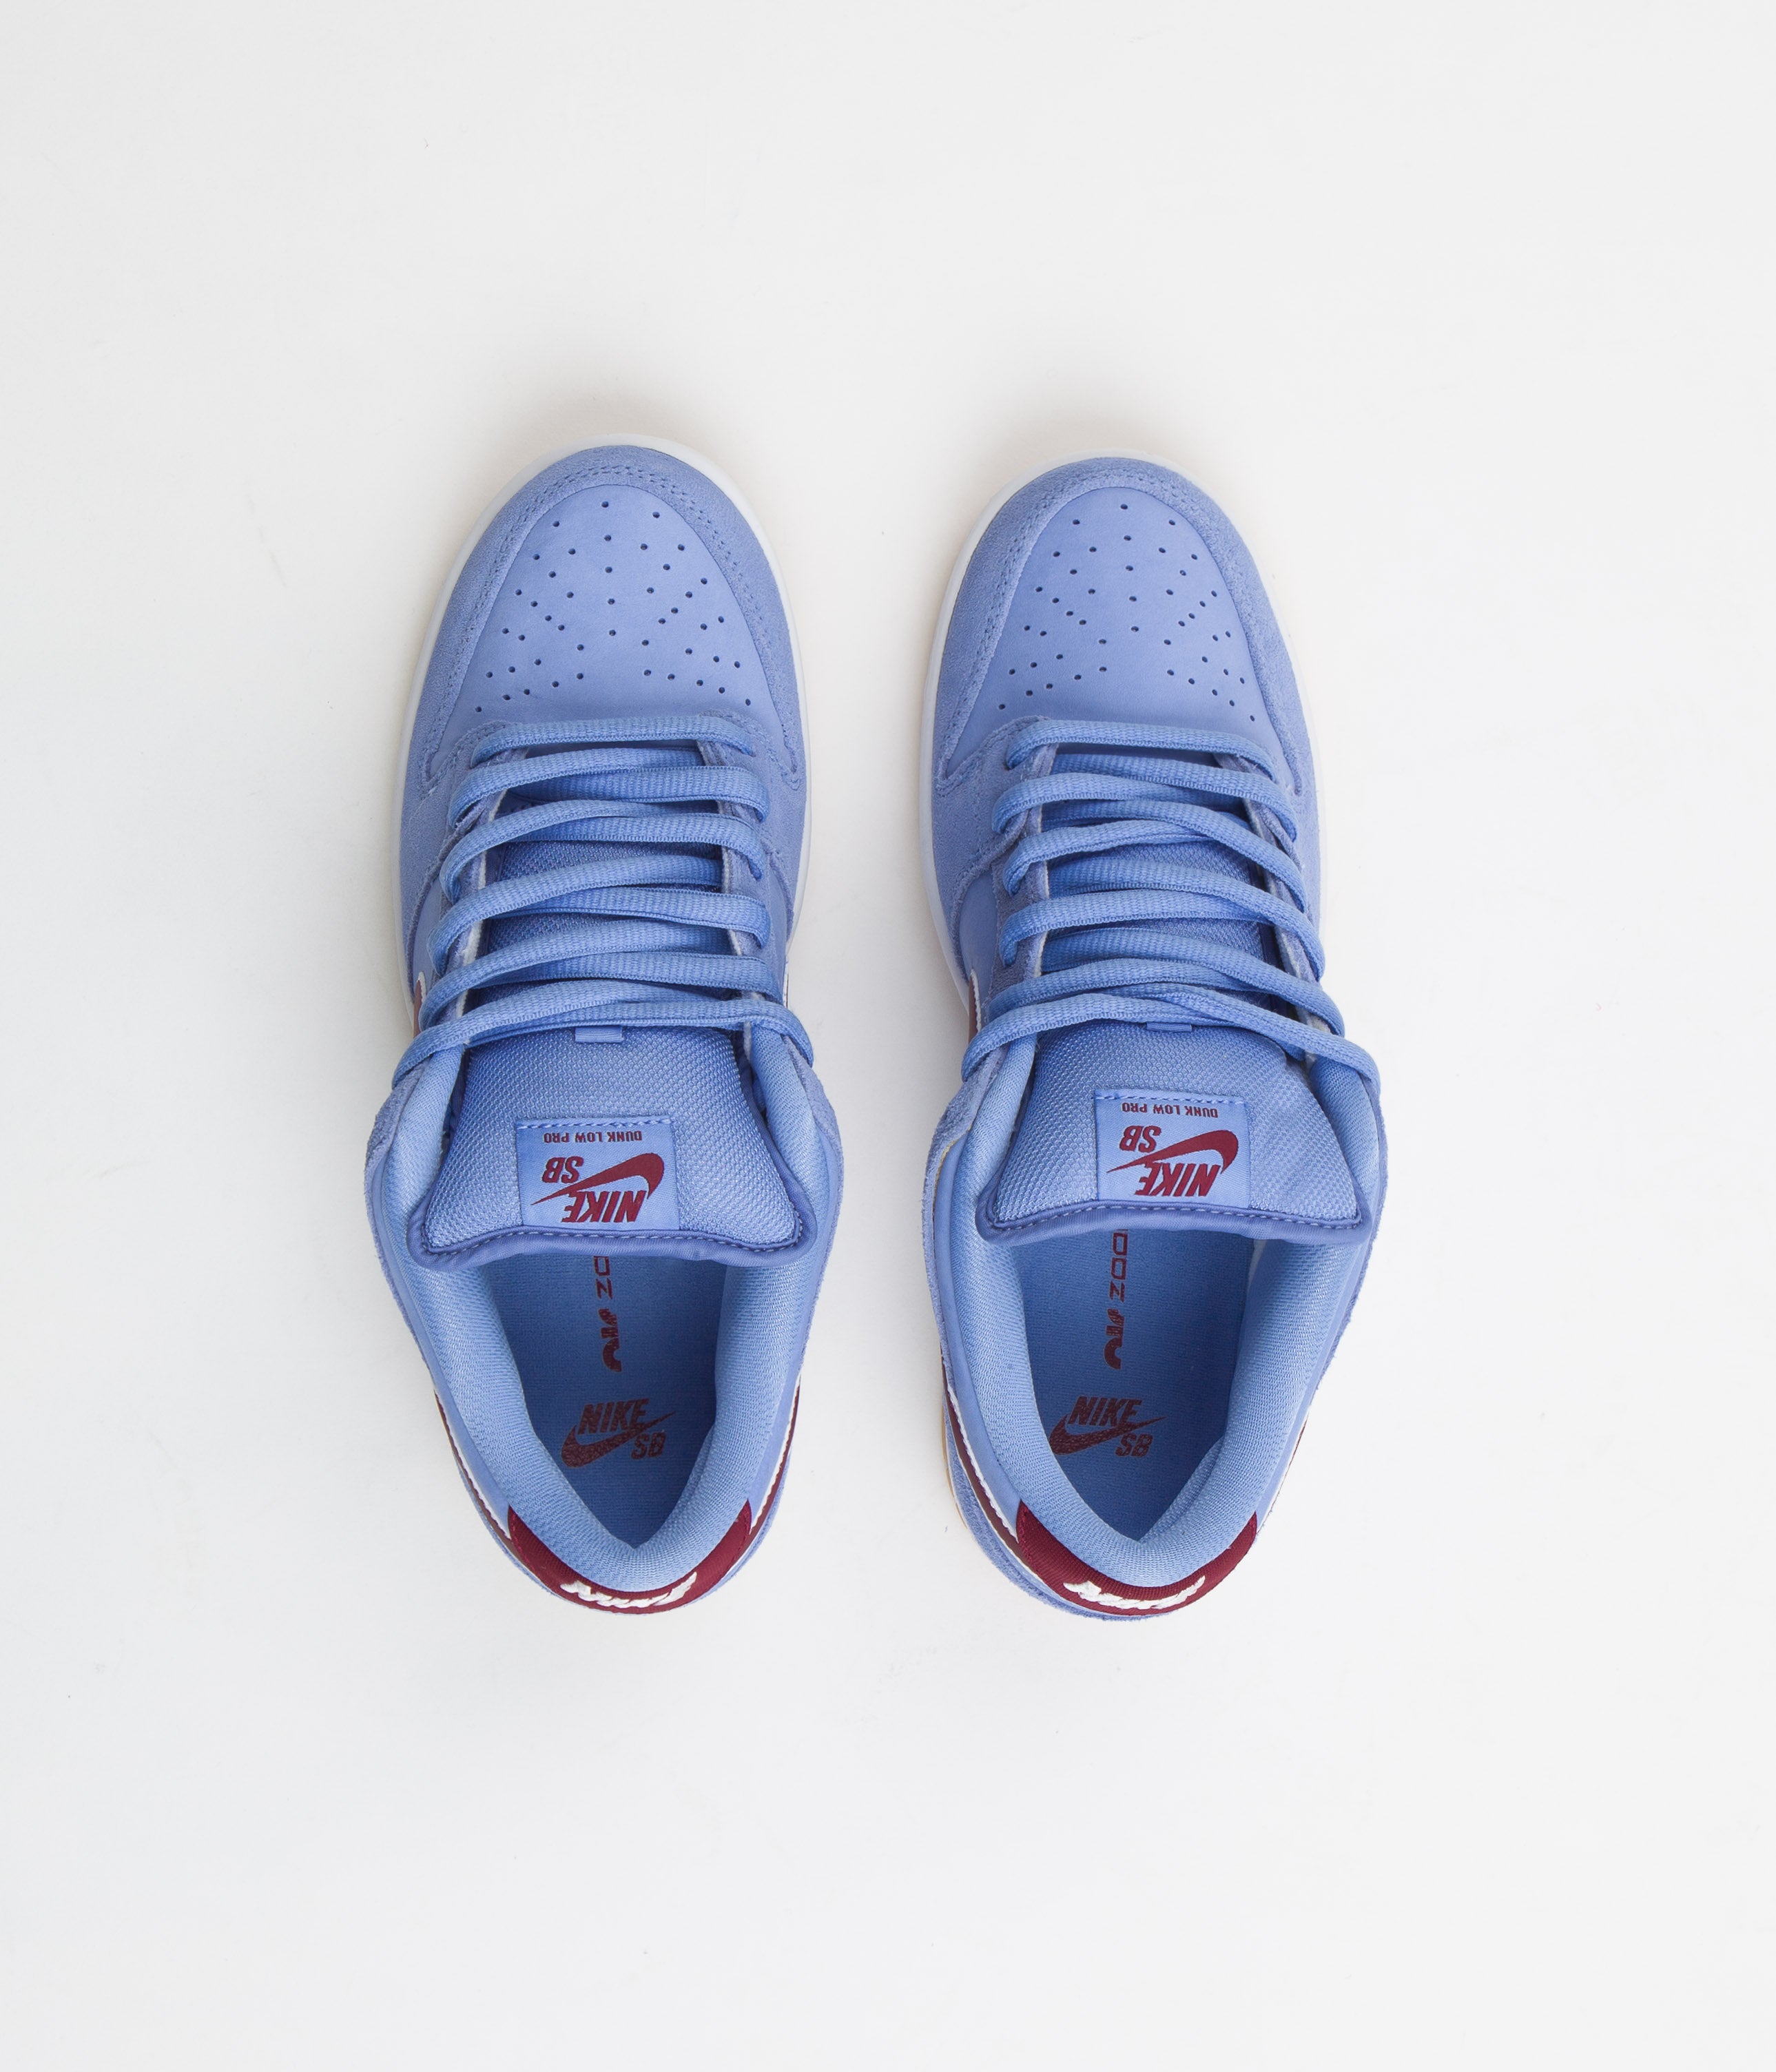 Nike SB Dunk Low 'Phillies' Premium Shoes - Valor Blue / Team